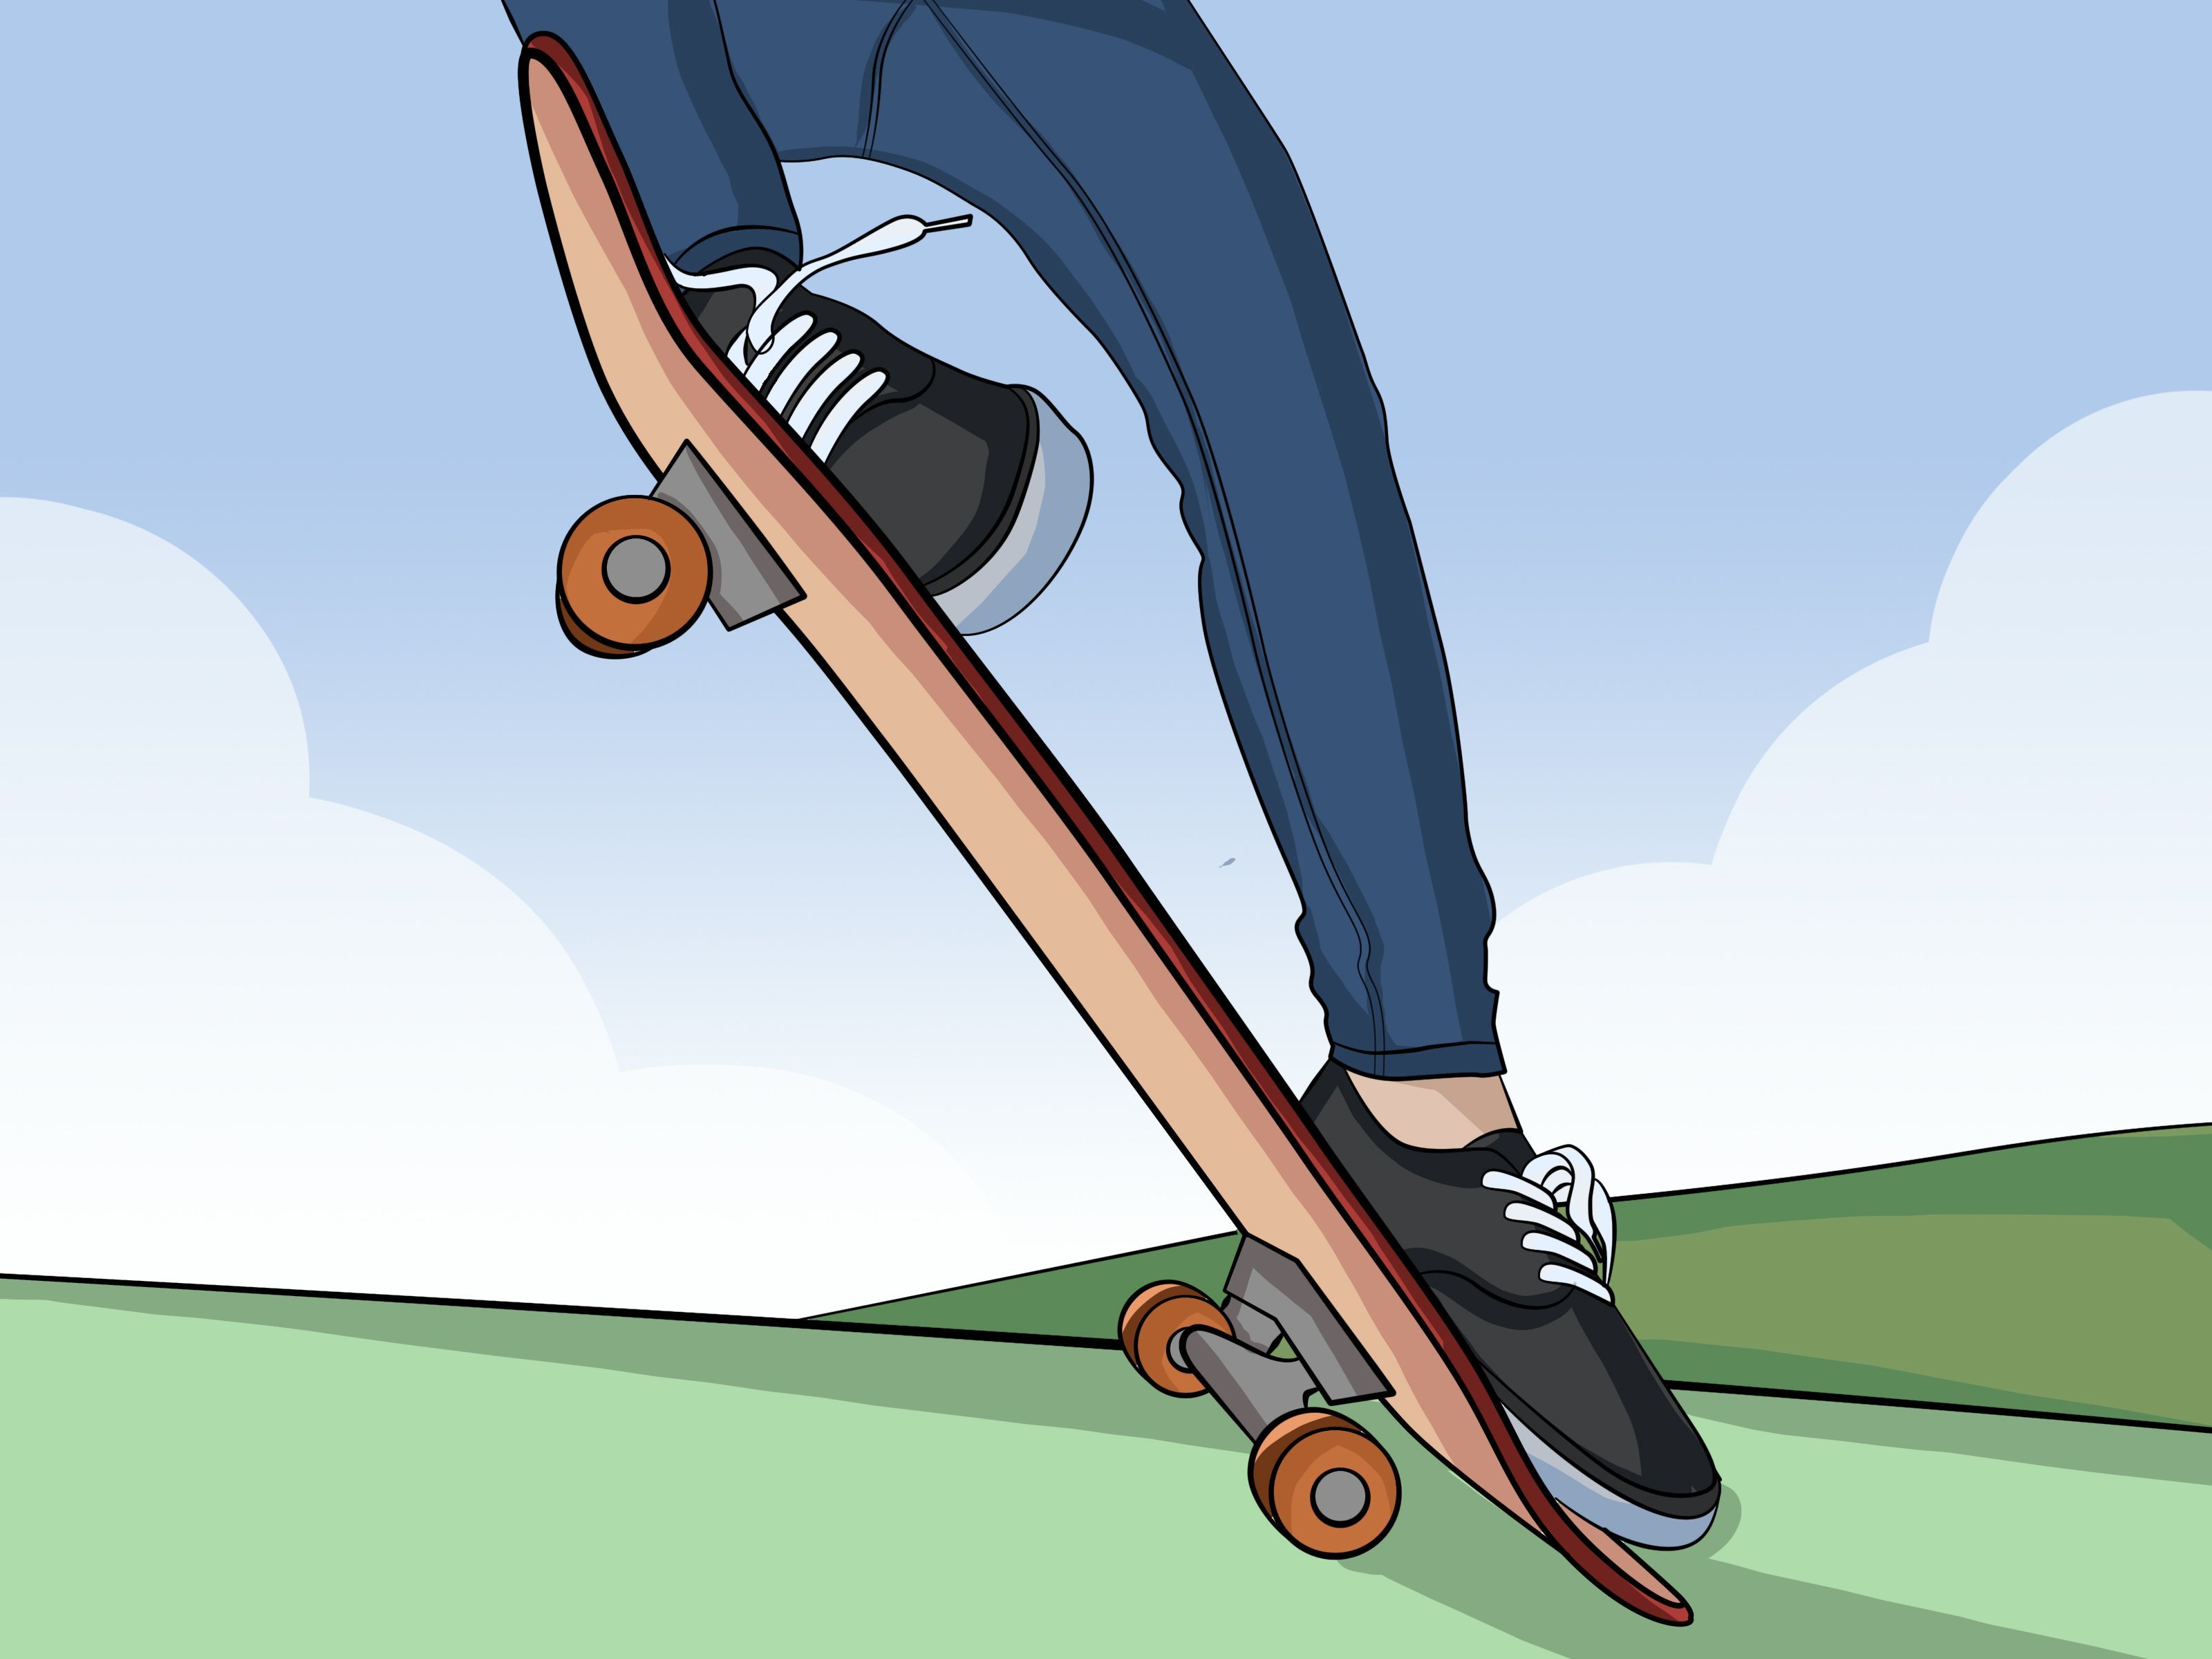 Aesthetic Skateboard Wallpaper